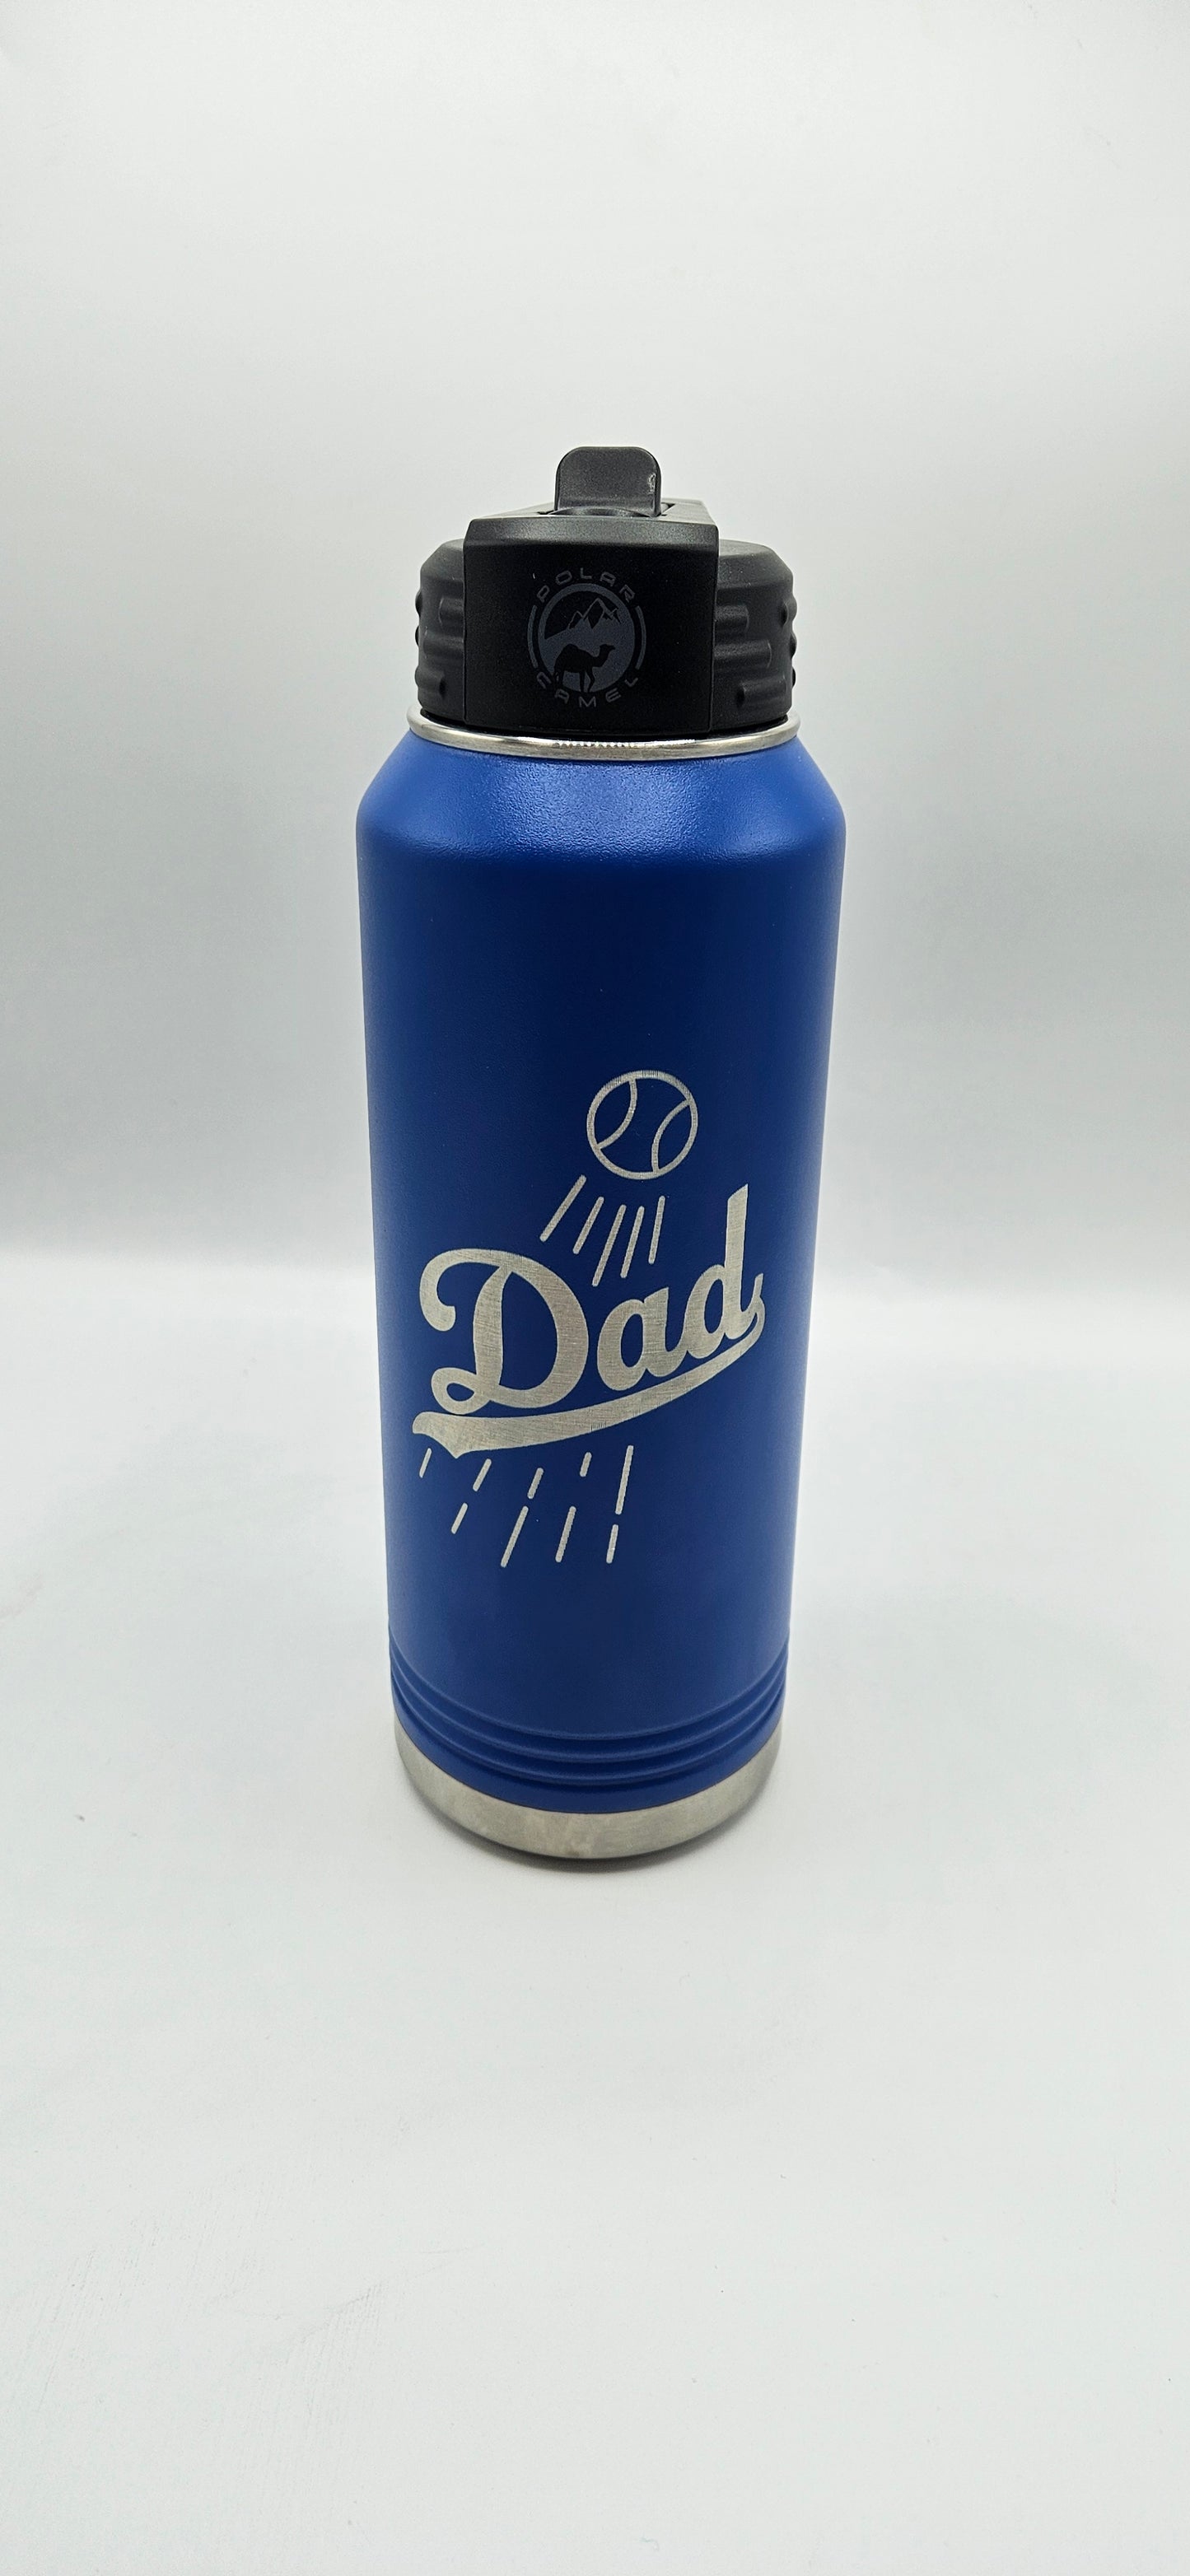 Dodger DAD 30oz water bottle